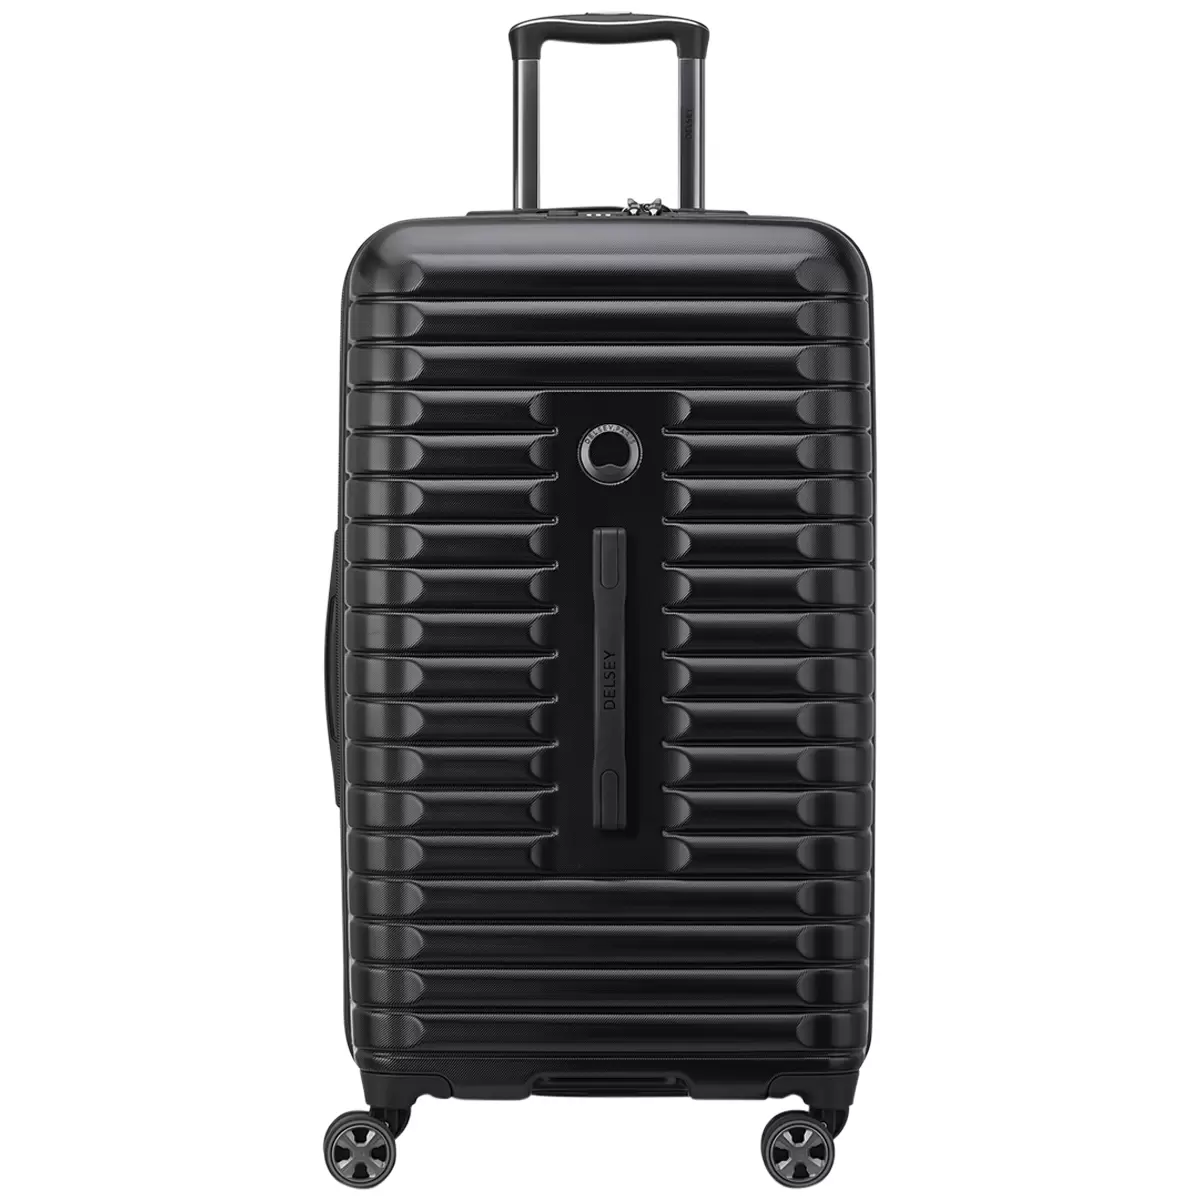 Delsey Paris 2 Piece Luggage Set Black